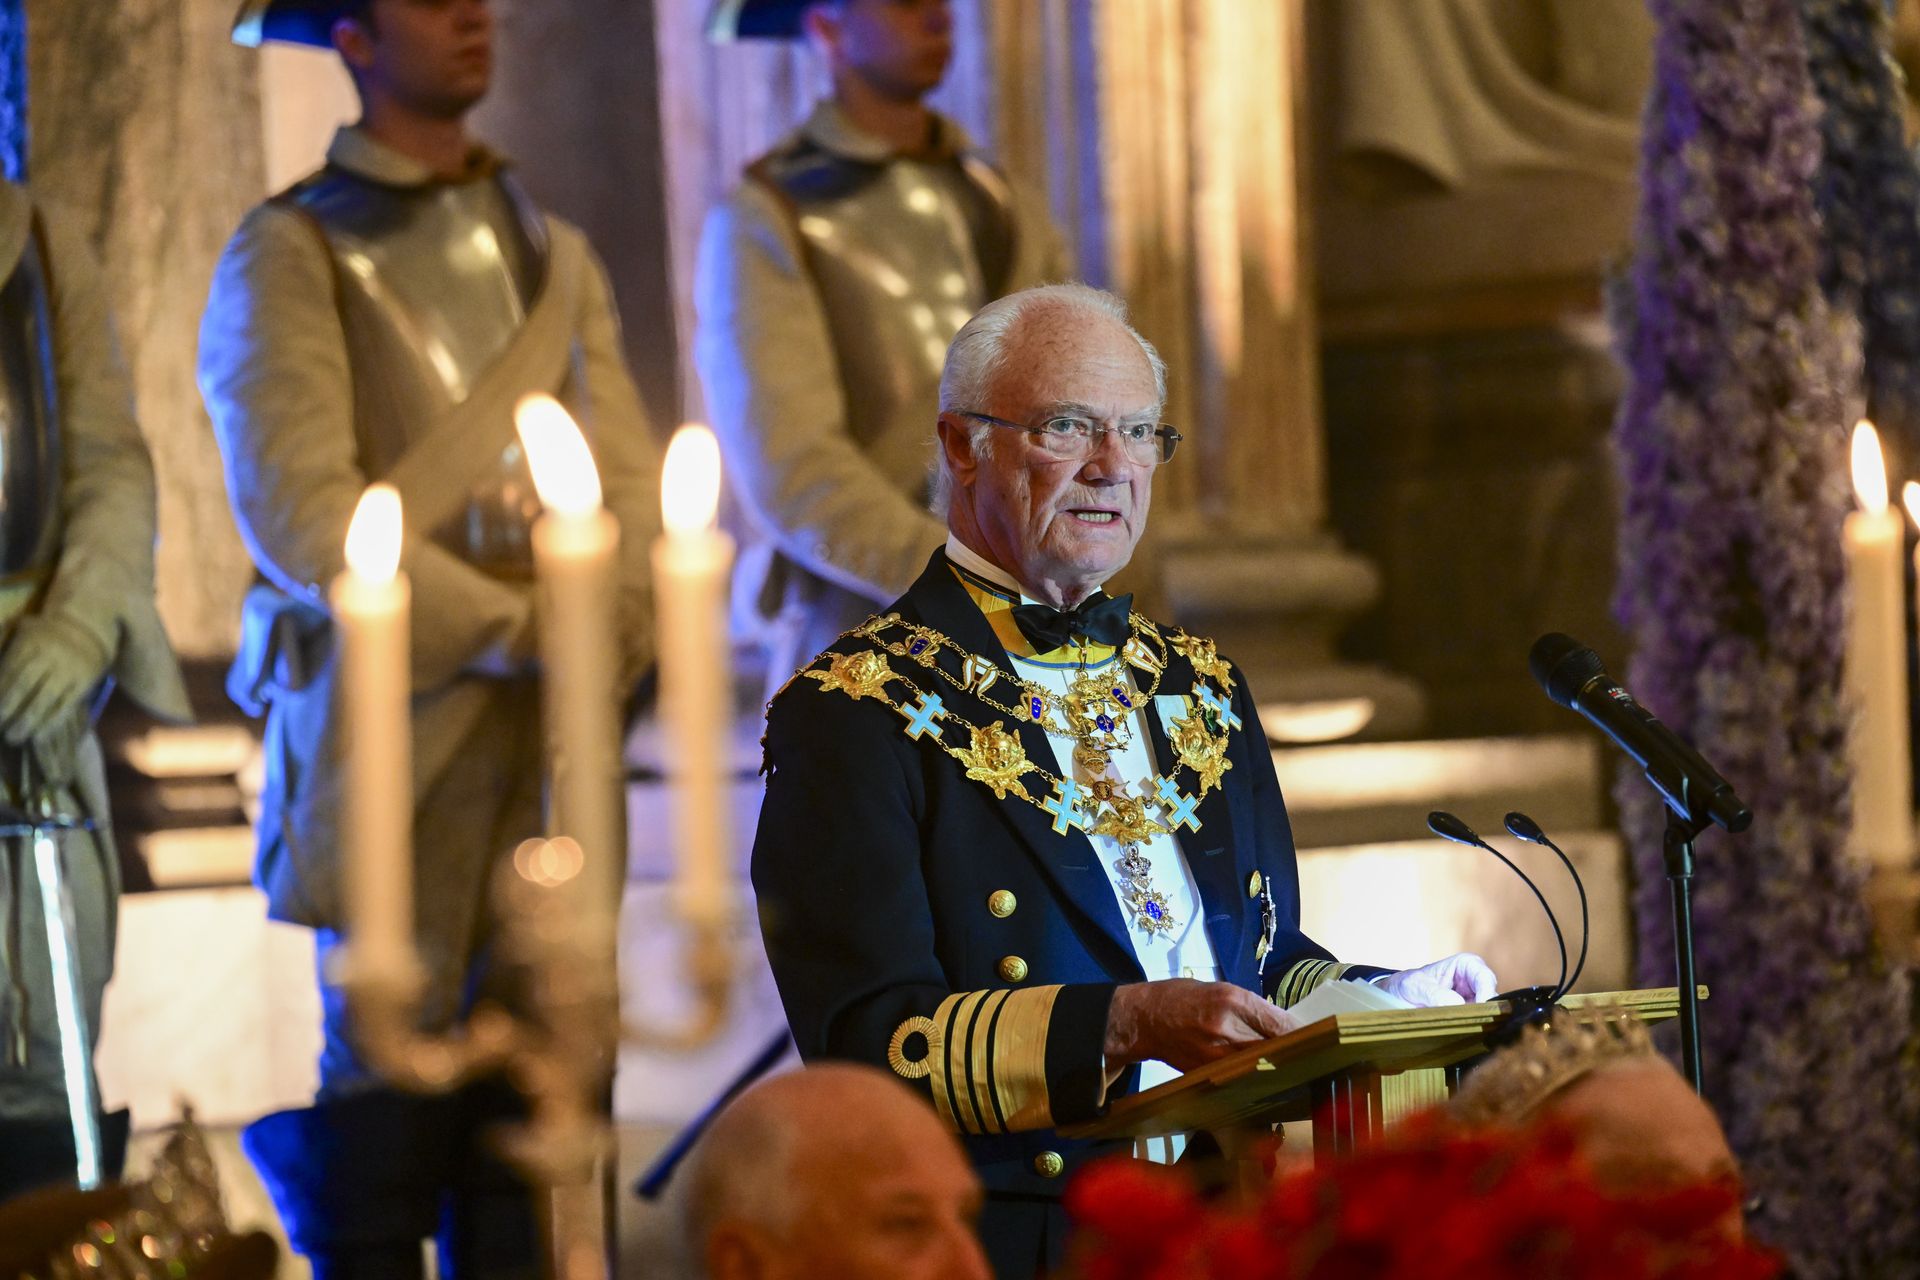 Koning Carl Gustaf tijdens zijn toespraak.